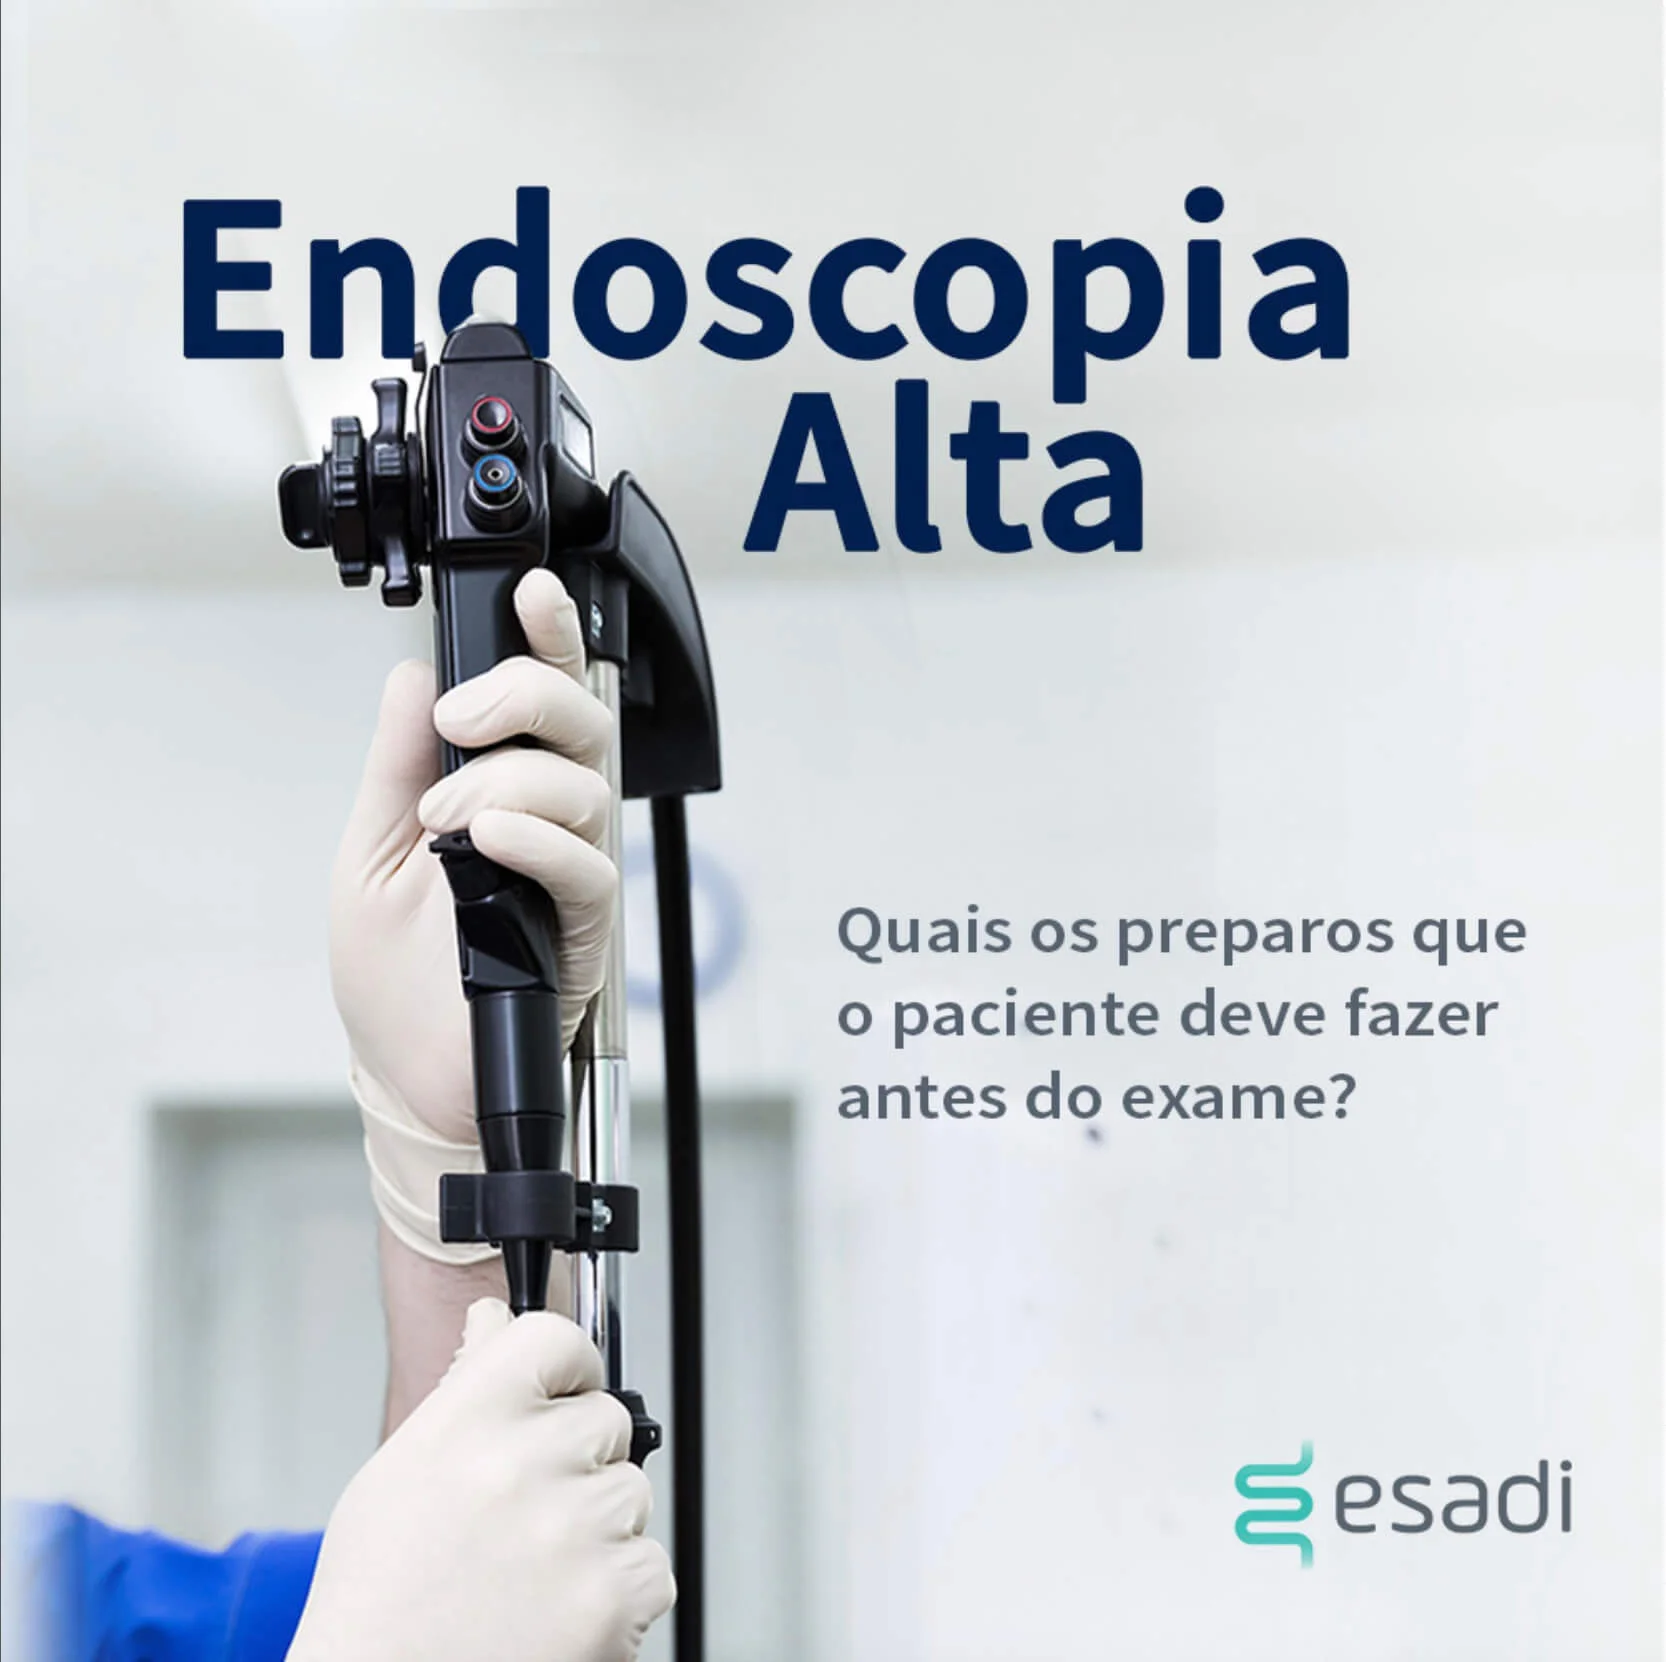 Endoscopia Alta - Quais os preparos que o paciente deve fazer antes do exame?